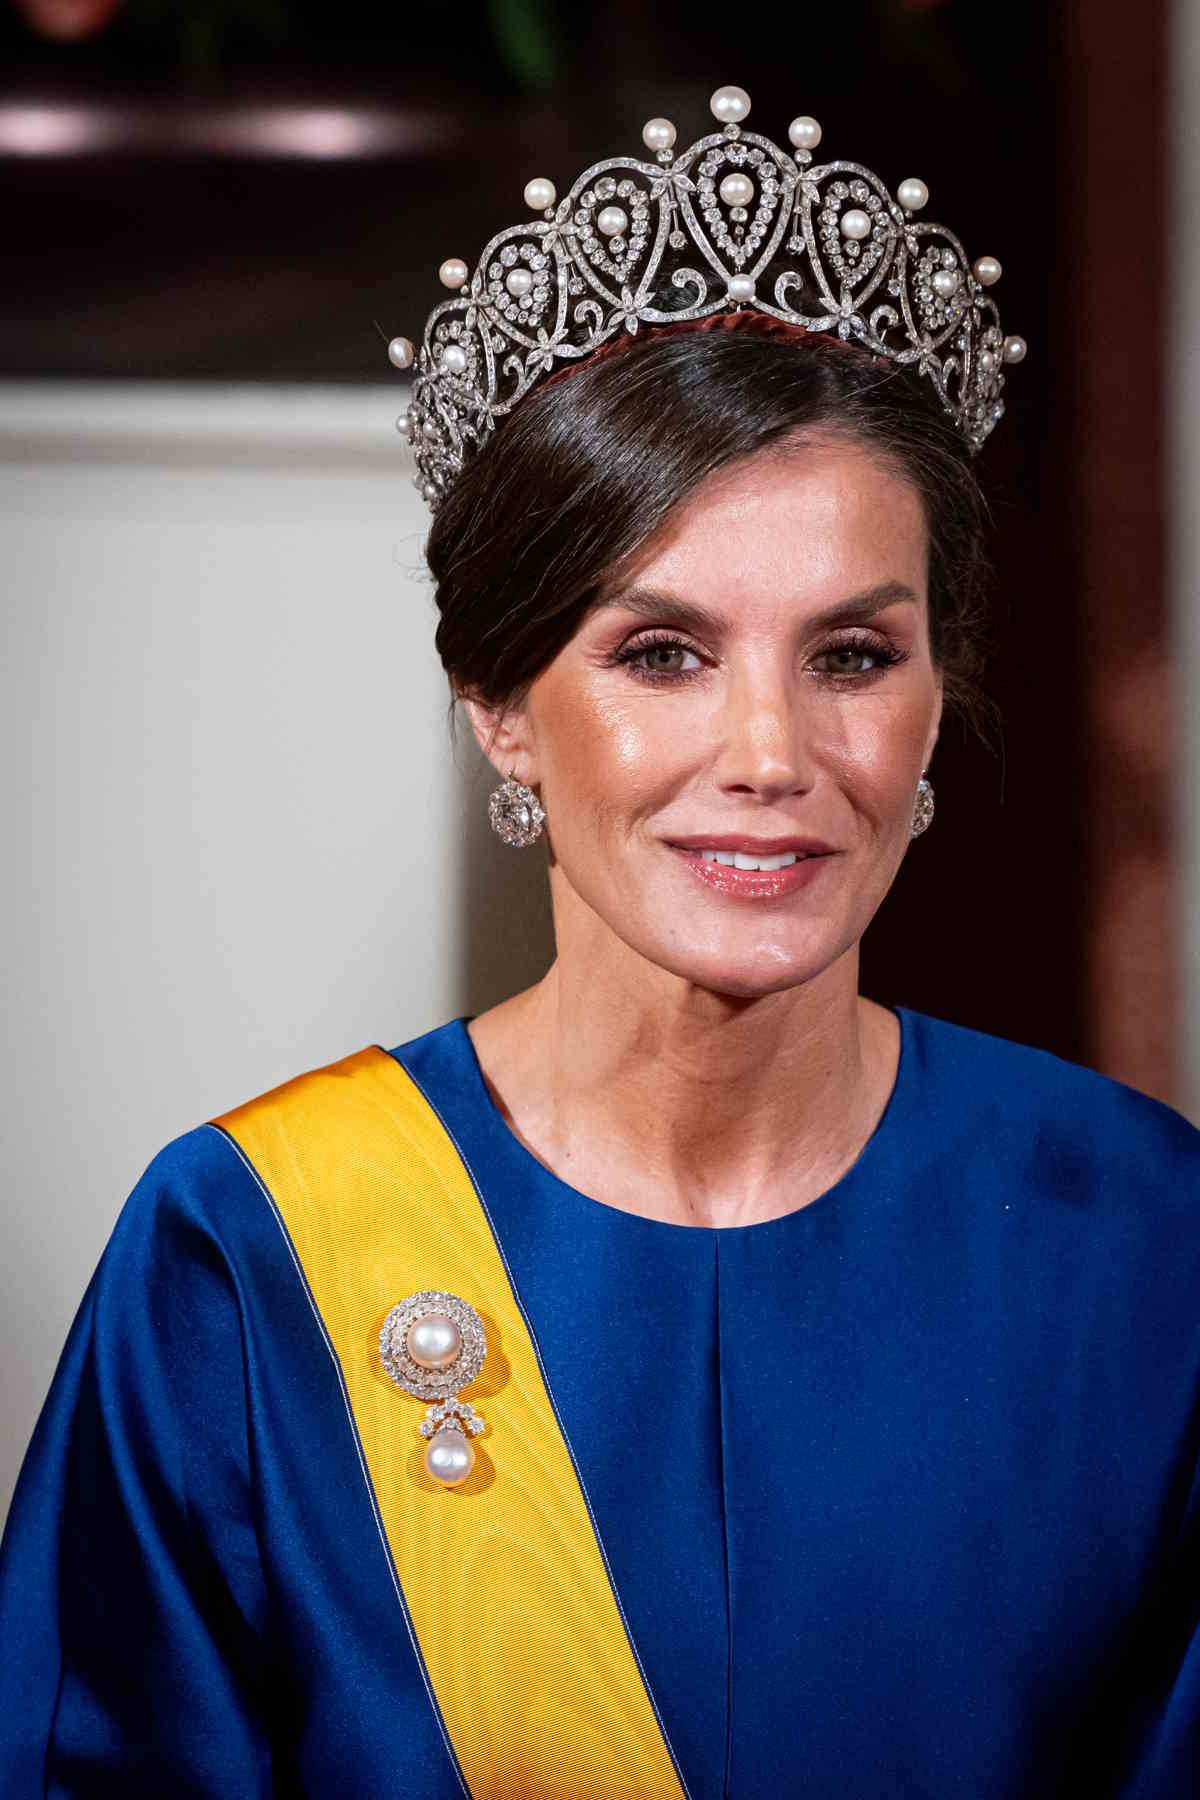 Królowa Letycja w balowej sukni w odcieniu royal blue. Hiszpańska rodzina królewska odwiedza Holandię.